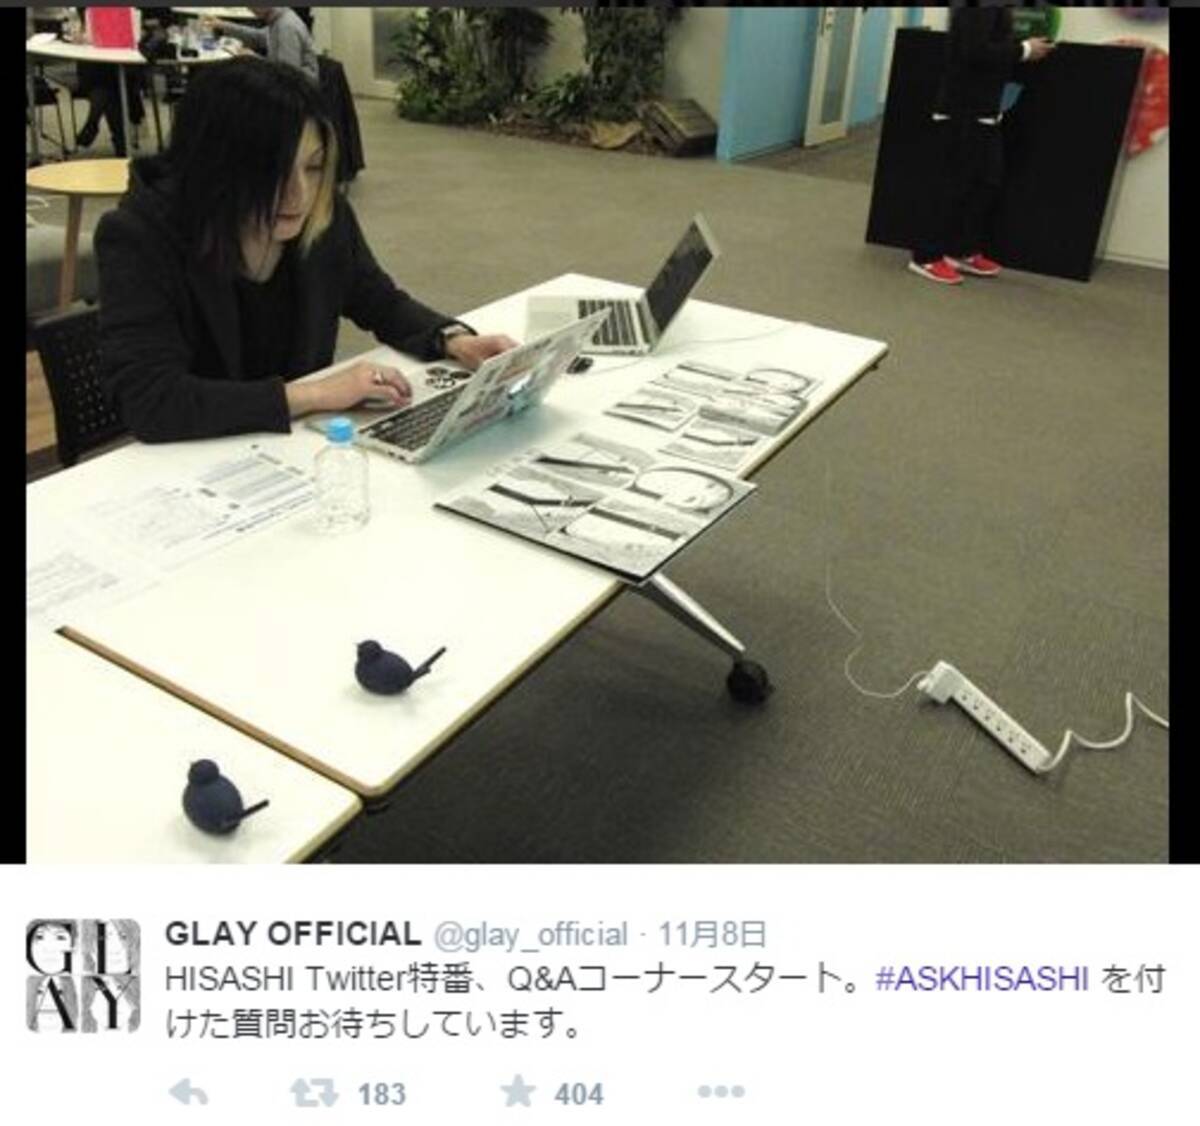 Glay Hisashiが新曲の告知で謎のツイート 私もglayを聴いて7キロやせたよ 15年3月26日 エキサイトニュース